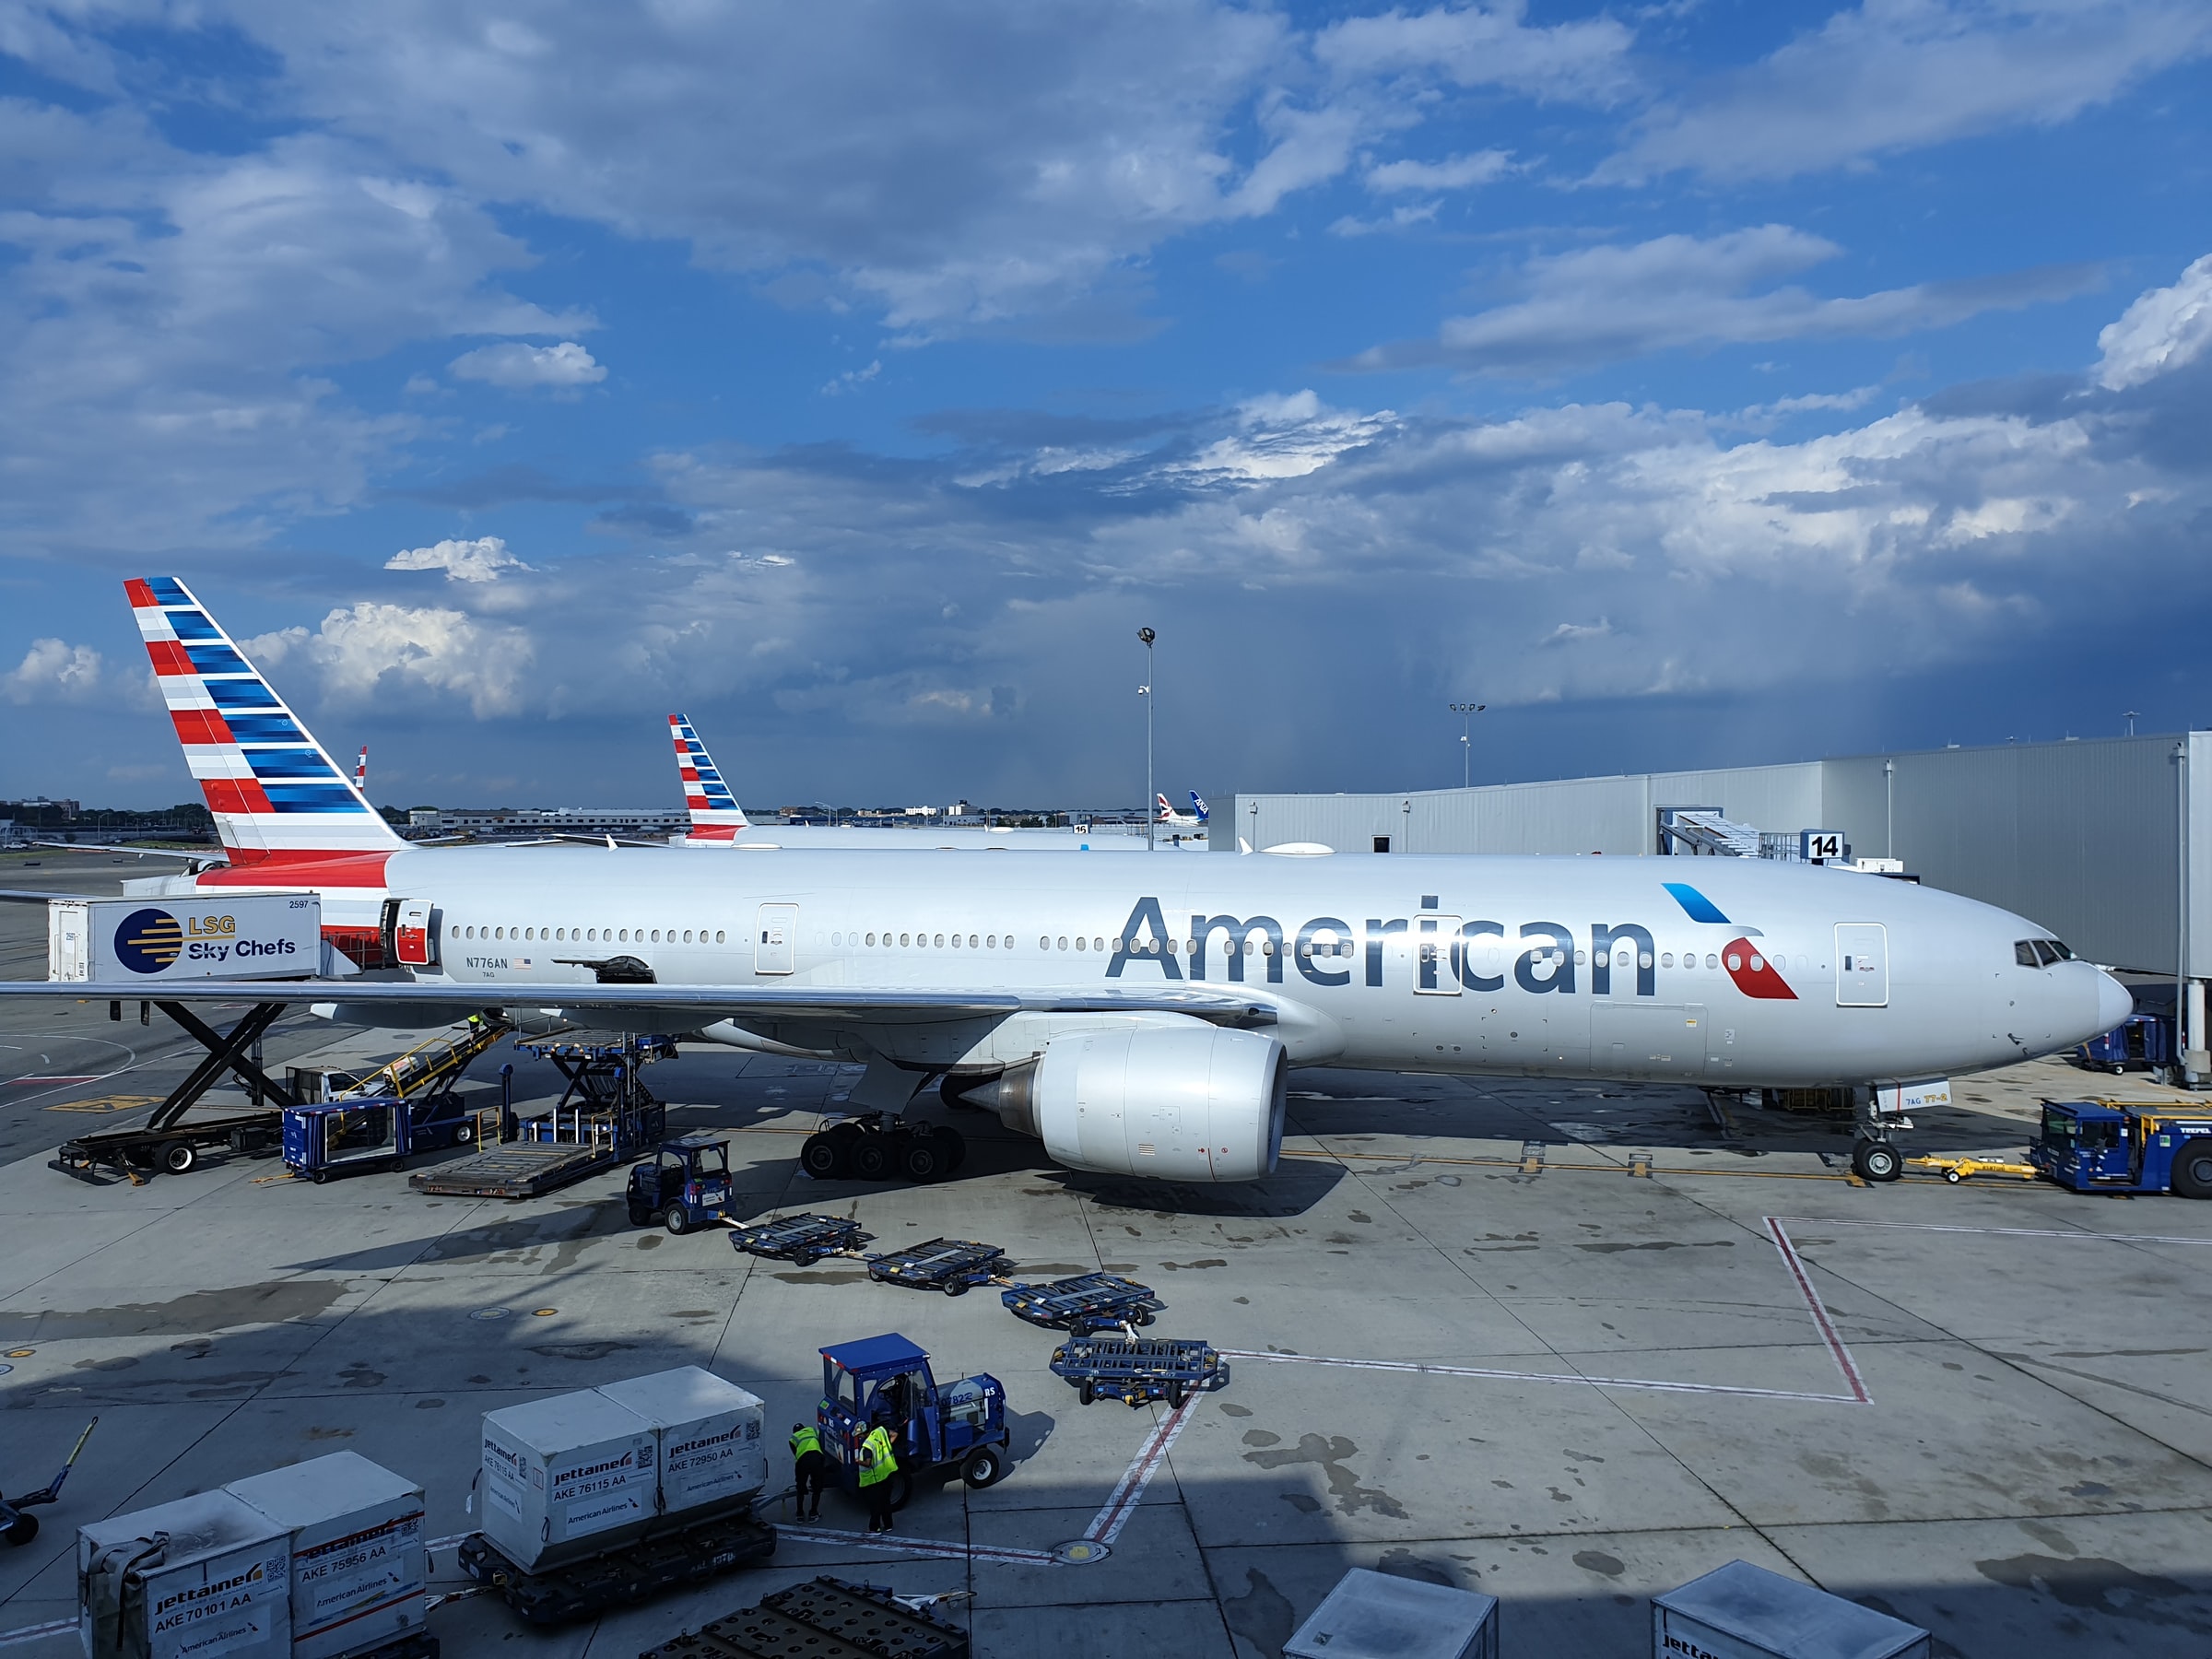 Al Blackman, American Airlines ile 80 yılını kutluyor